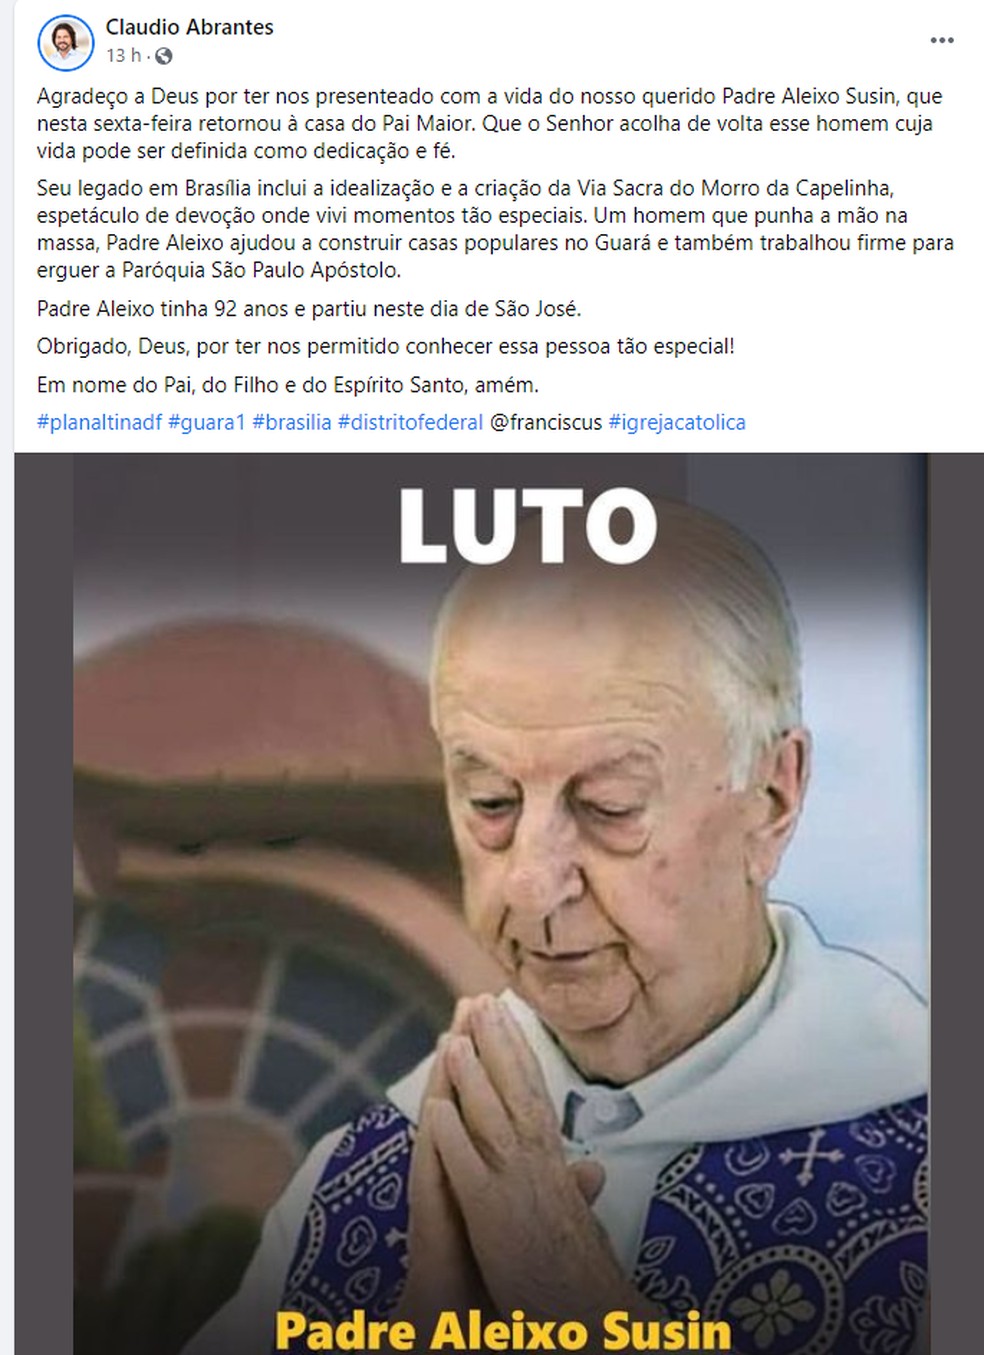 Homenagem do deputado Claudio Abrantes, nas redes sociais, ao Padre Aleixo Susin — Foto: Facebook/Reprodução